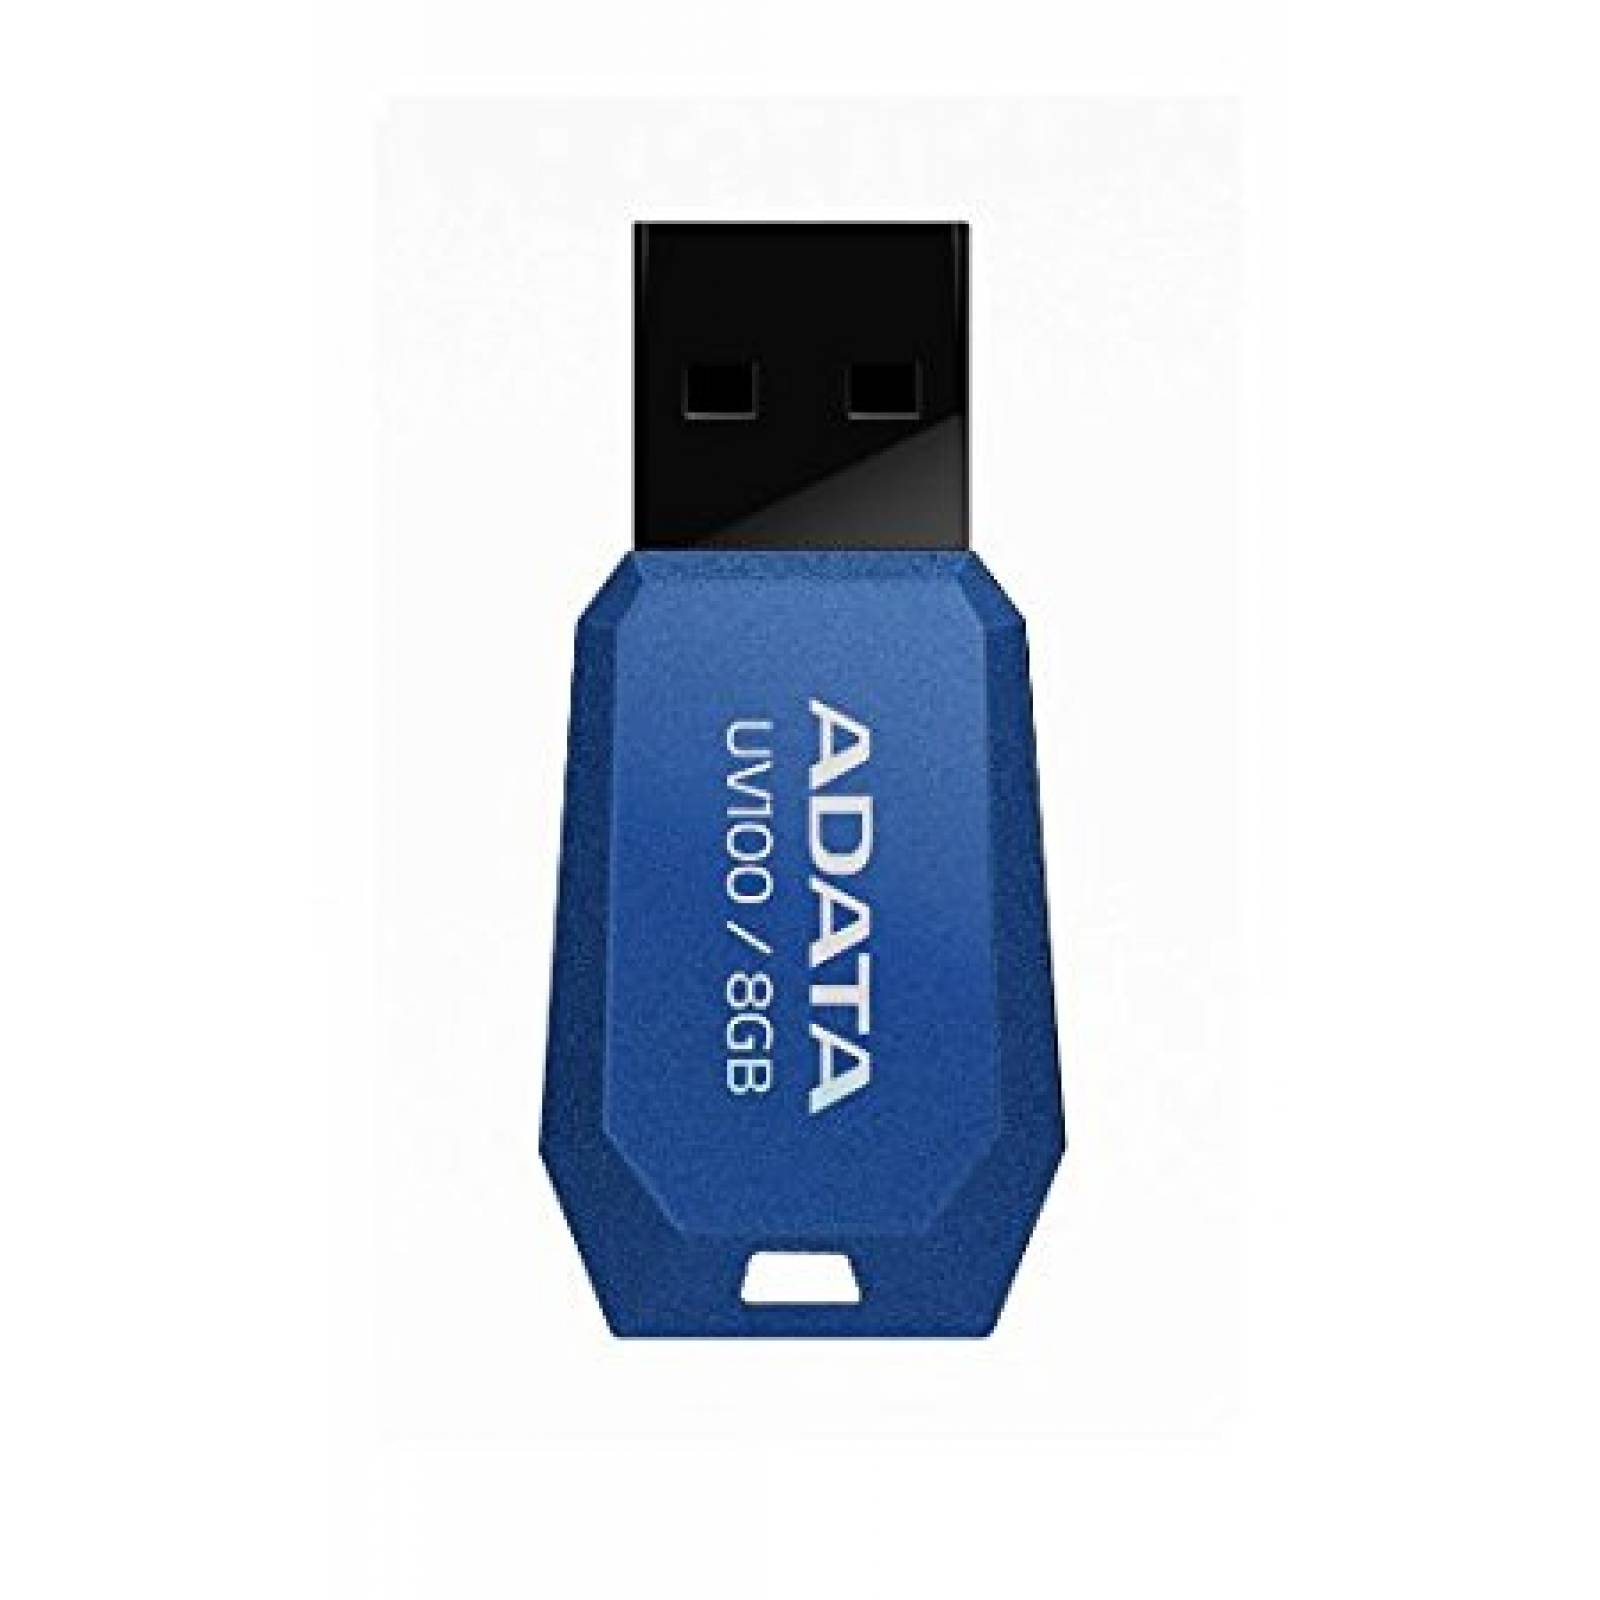 Memoria Usb Adata DashDrive UV100 8GB USB 2.0 Azul